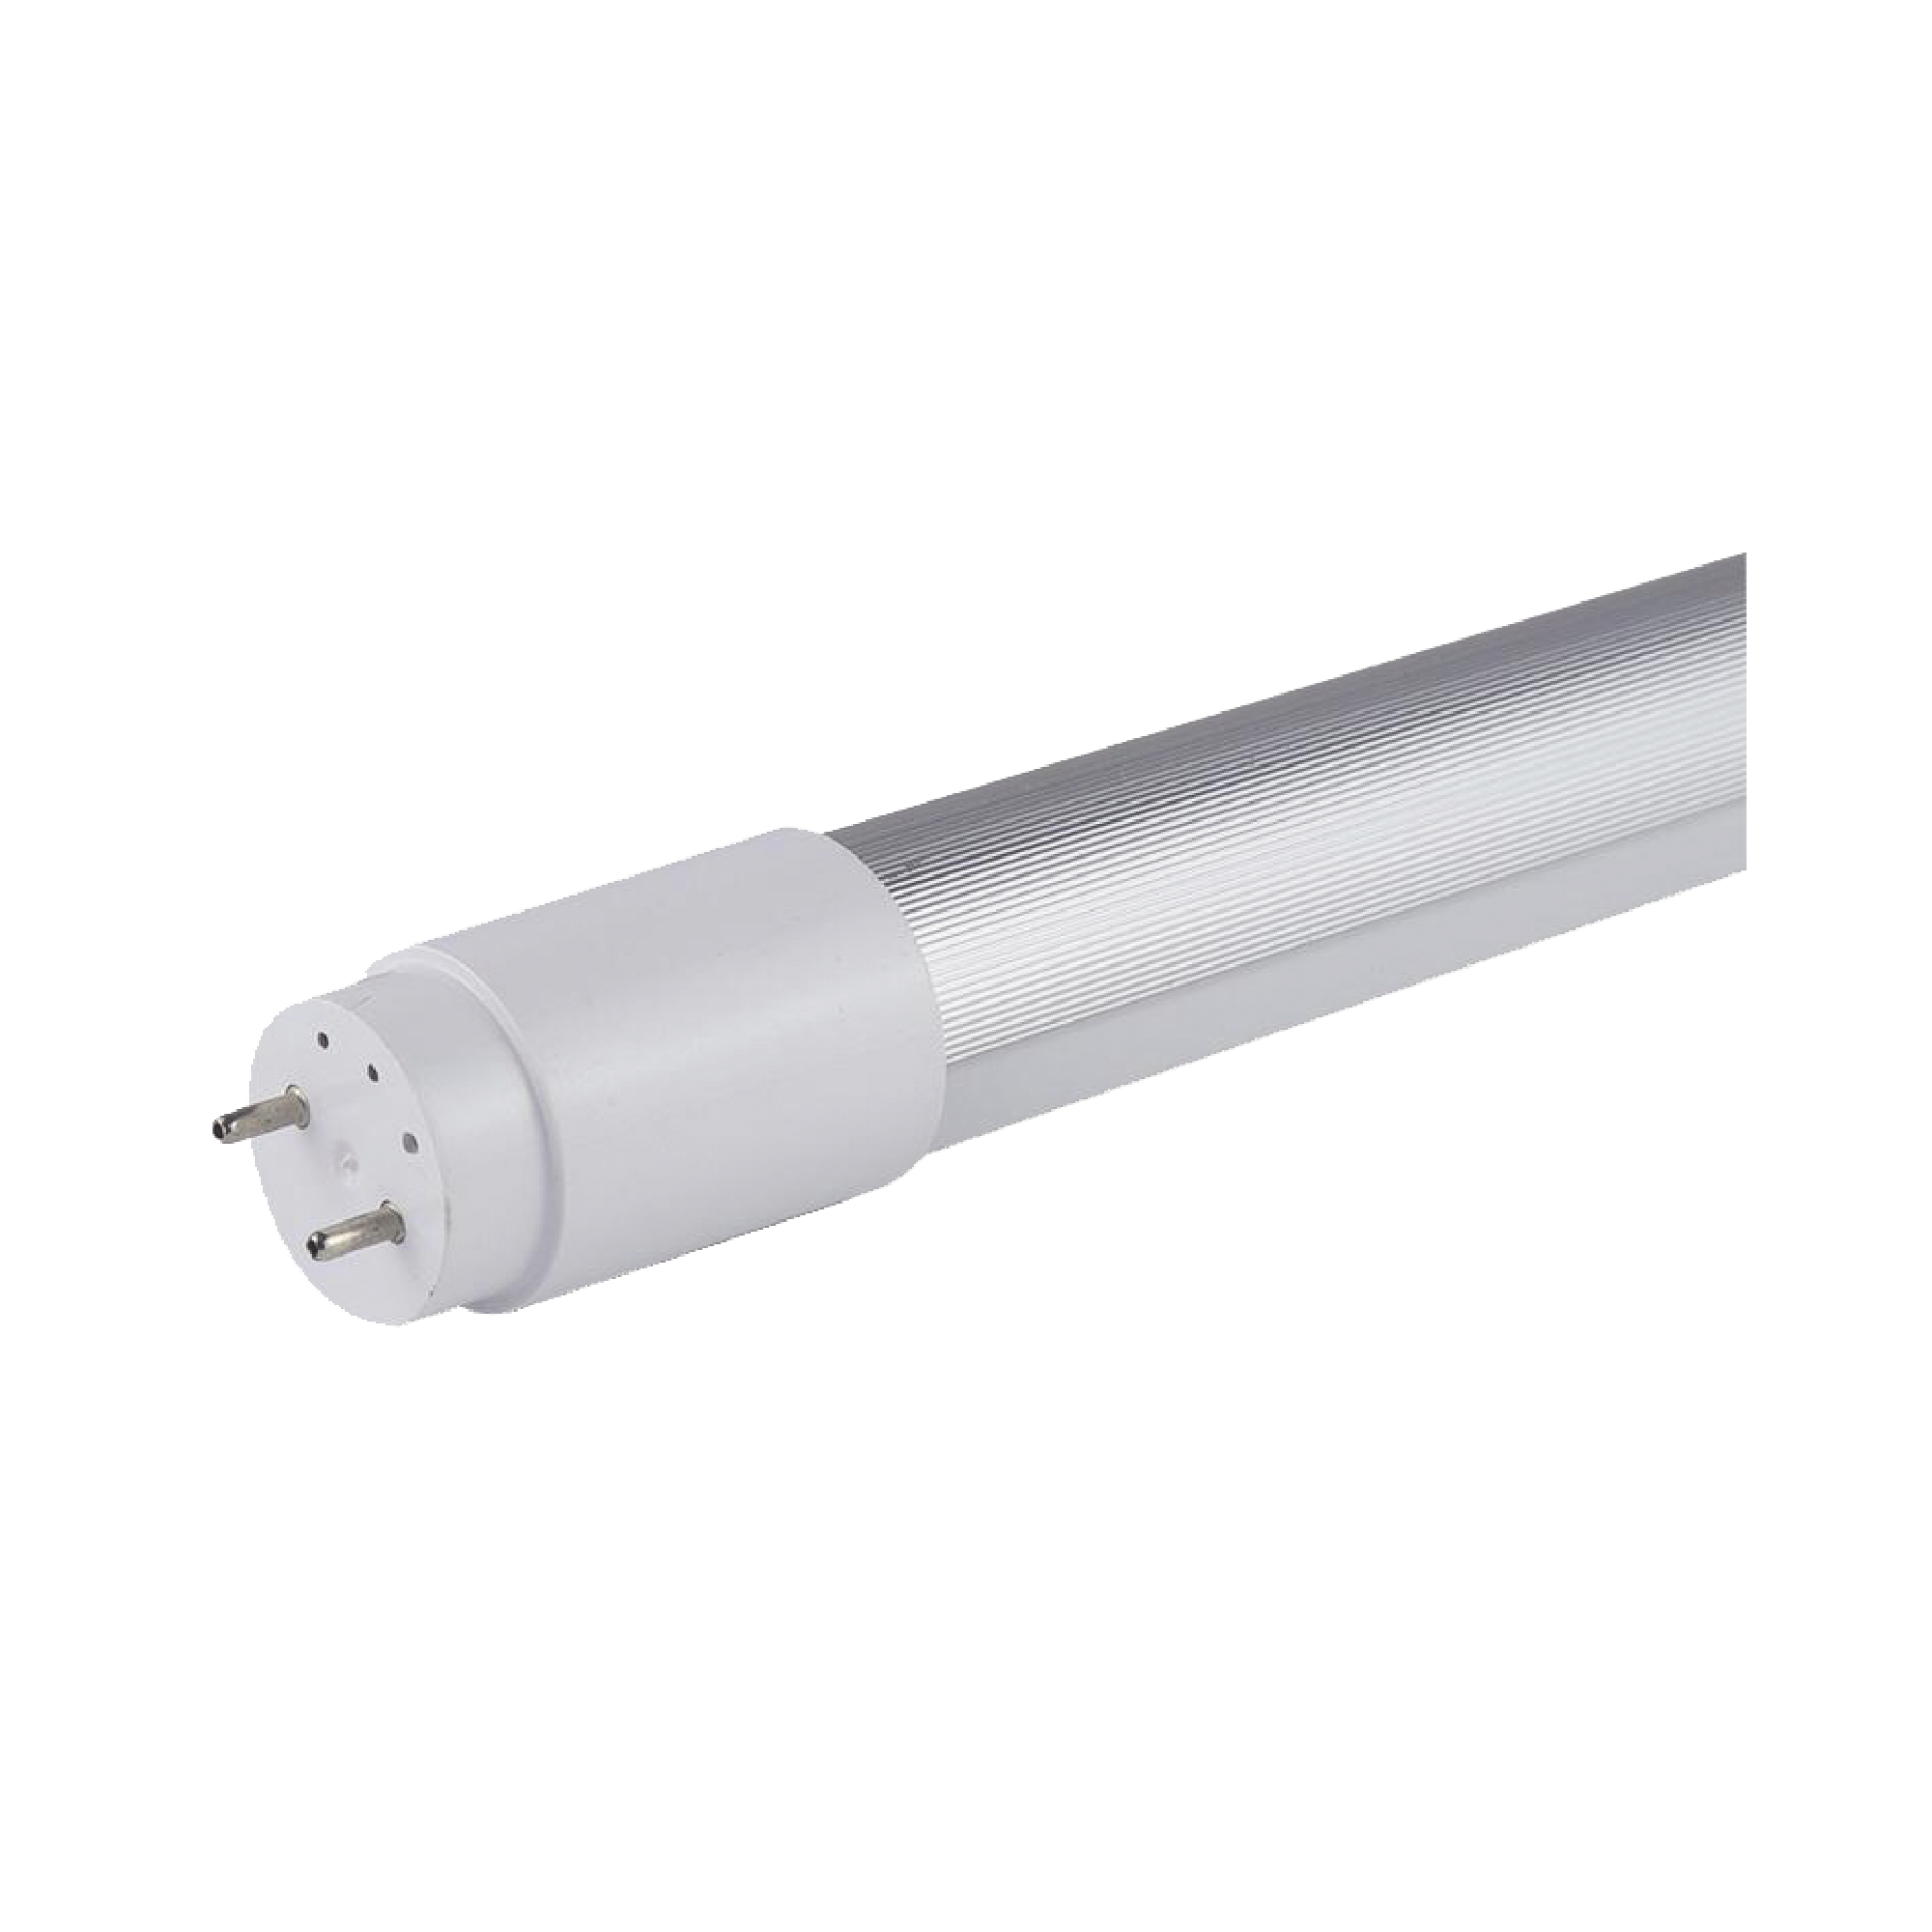 Lámpara LED T8 de 1200 mm de alta eficiencia 2160 lm con disipador de Aluminio para aplicaciones de uso continuo